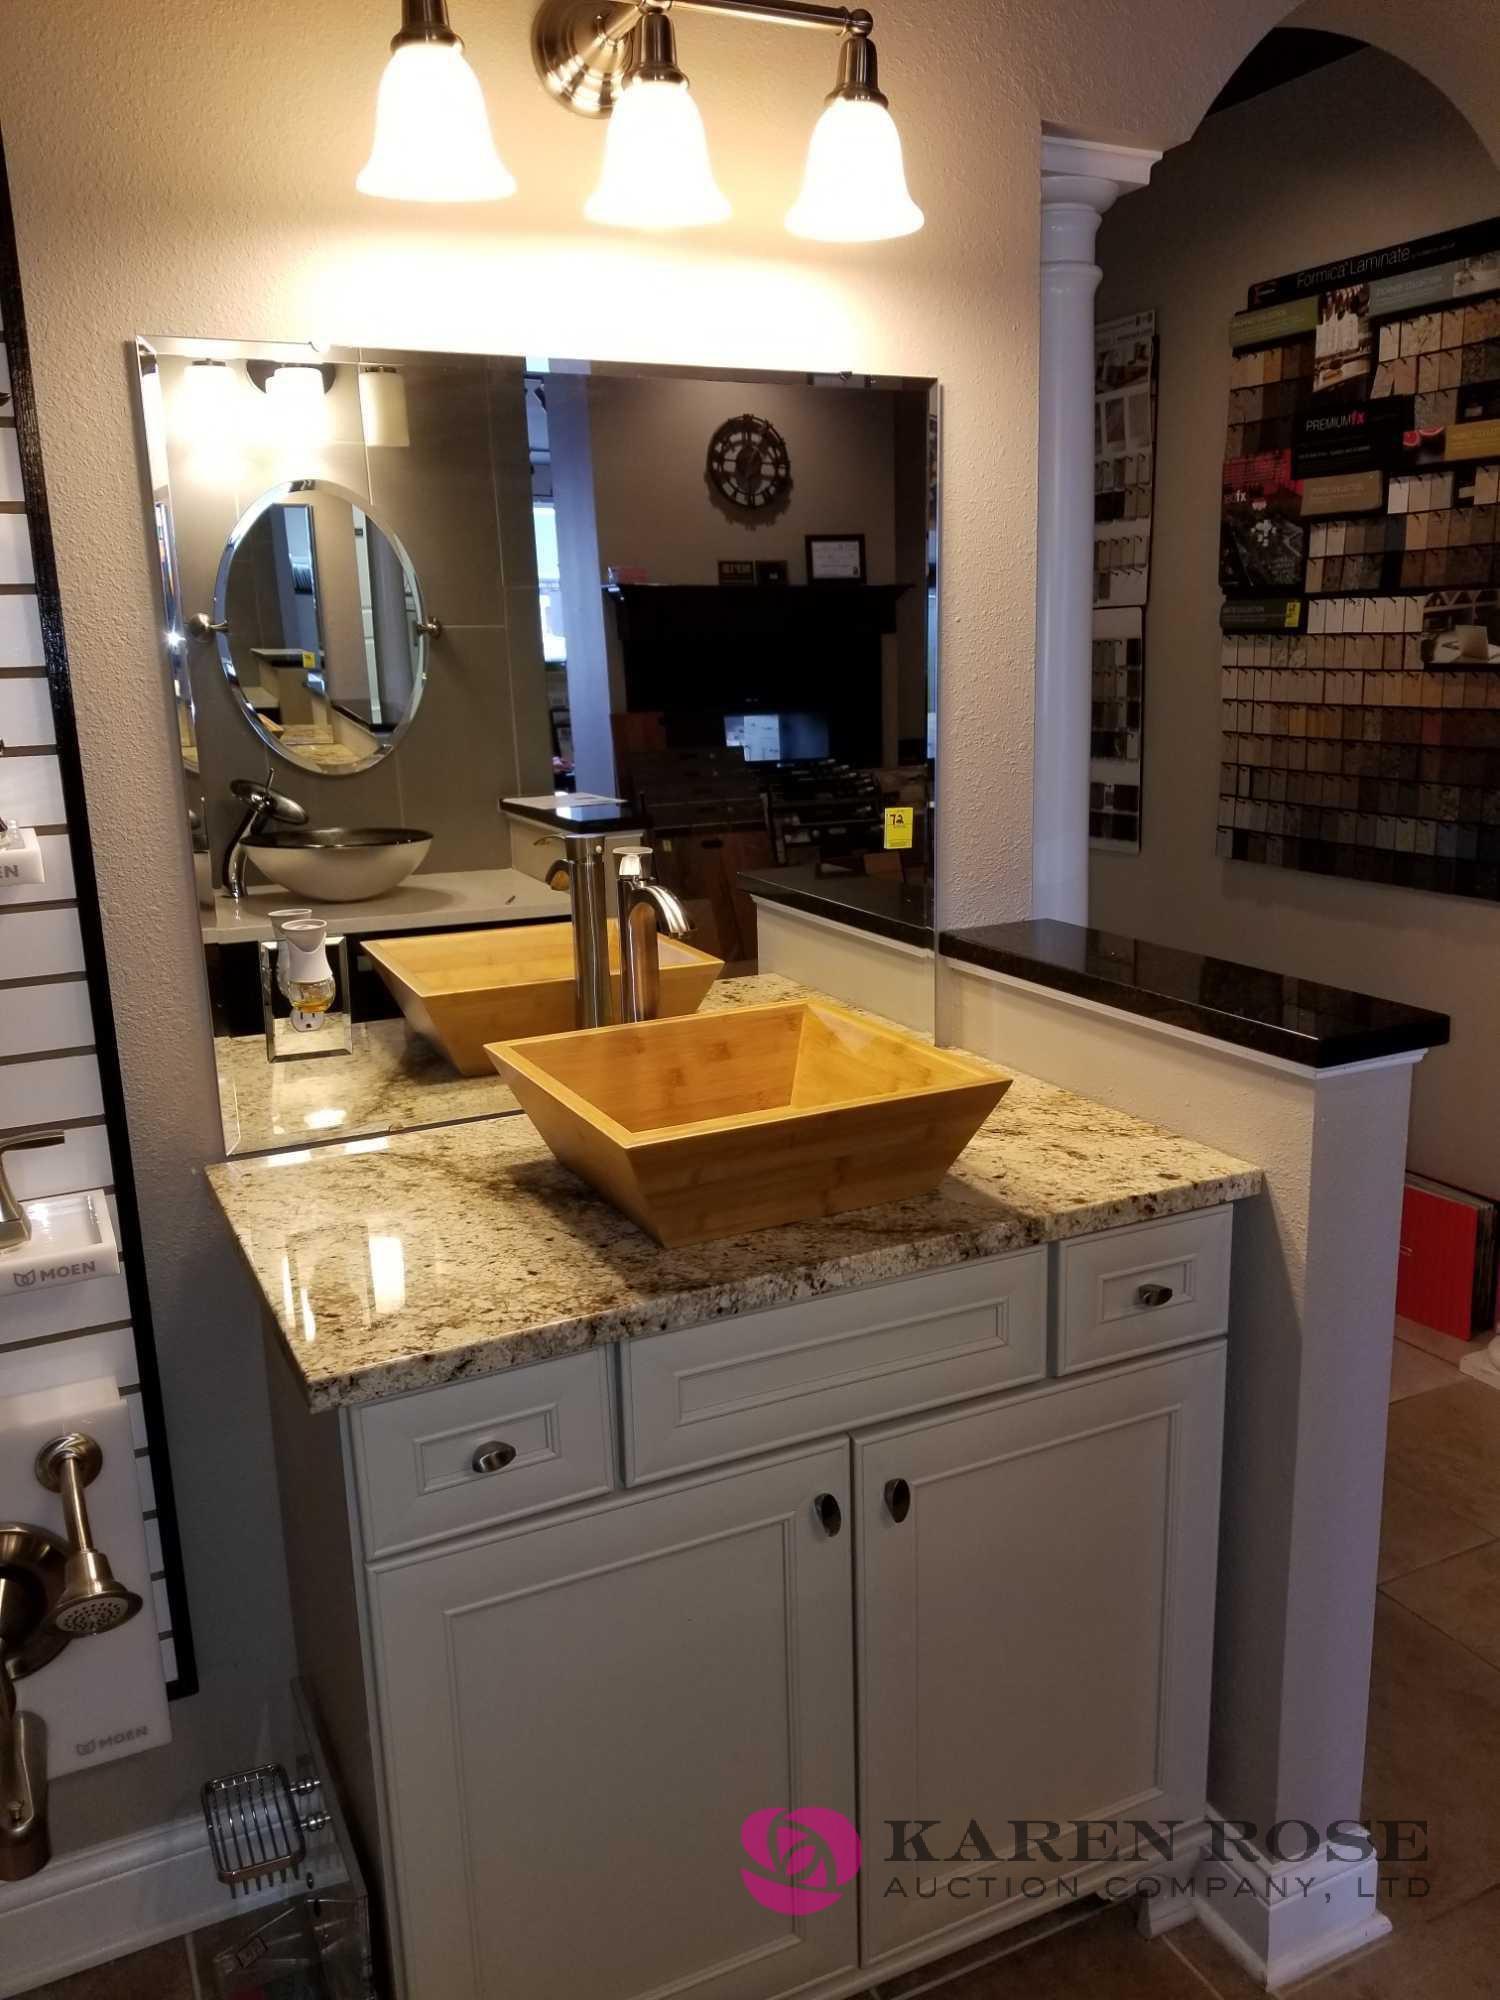 Bathroom Vanity, Vesse Sink, Mirror, Light Bar